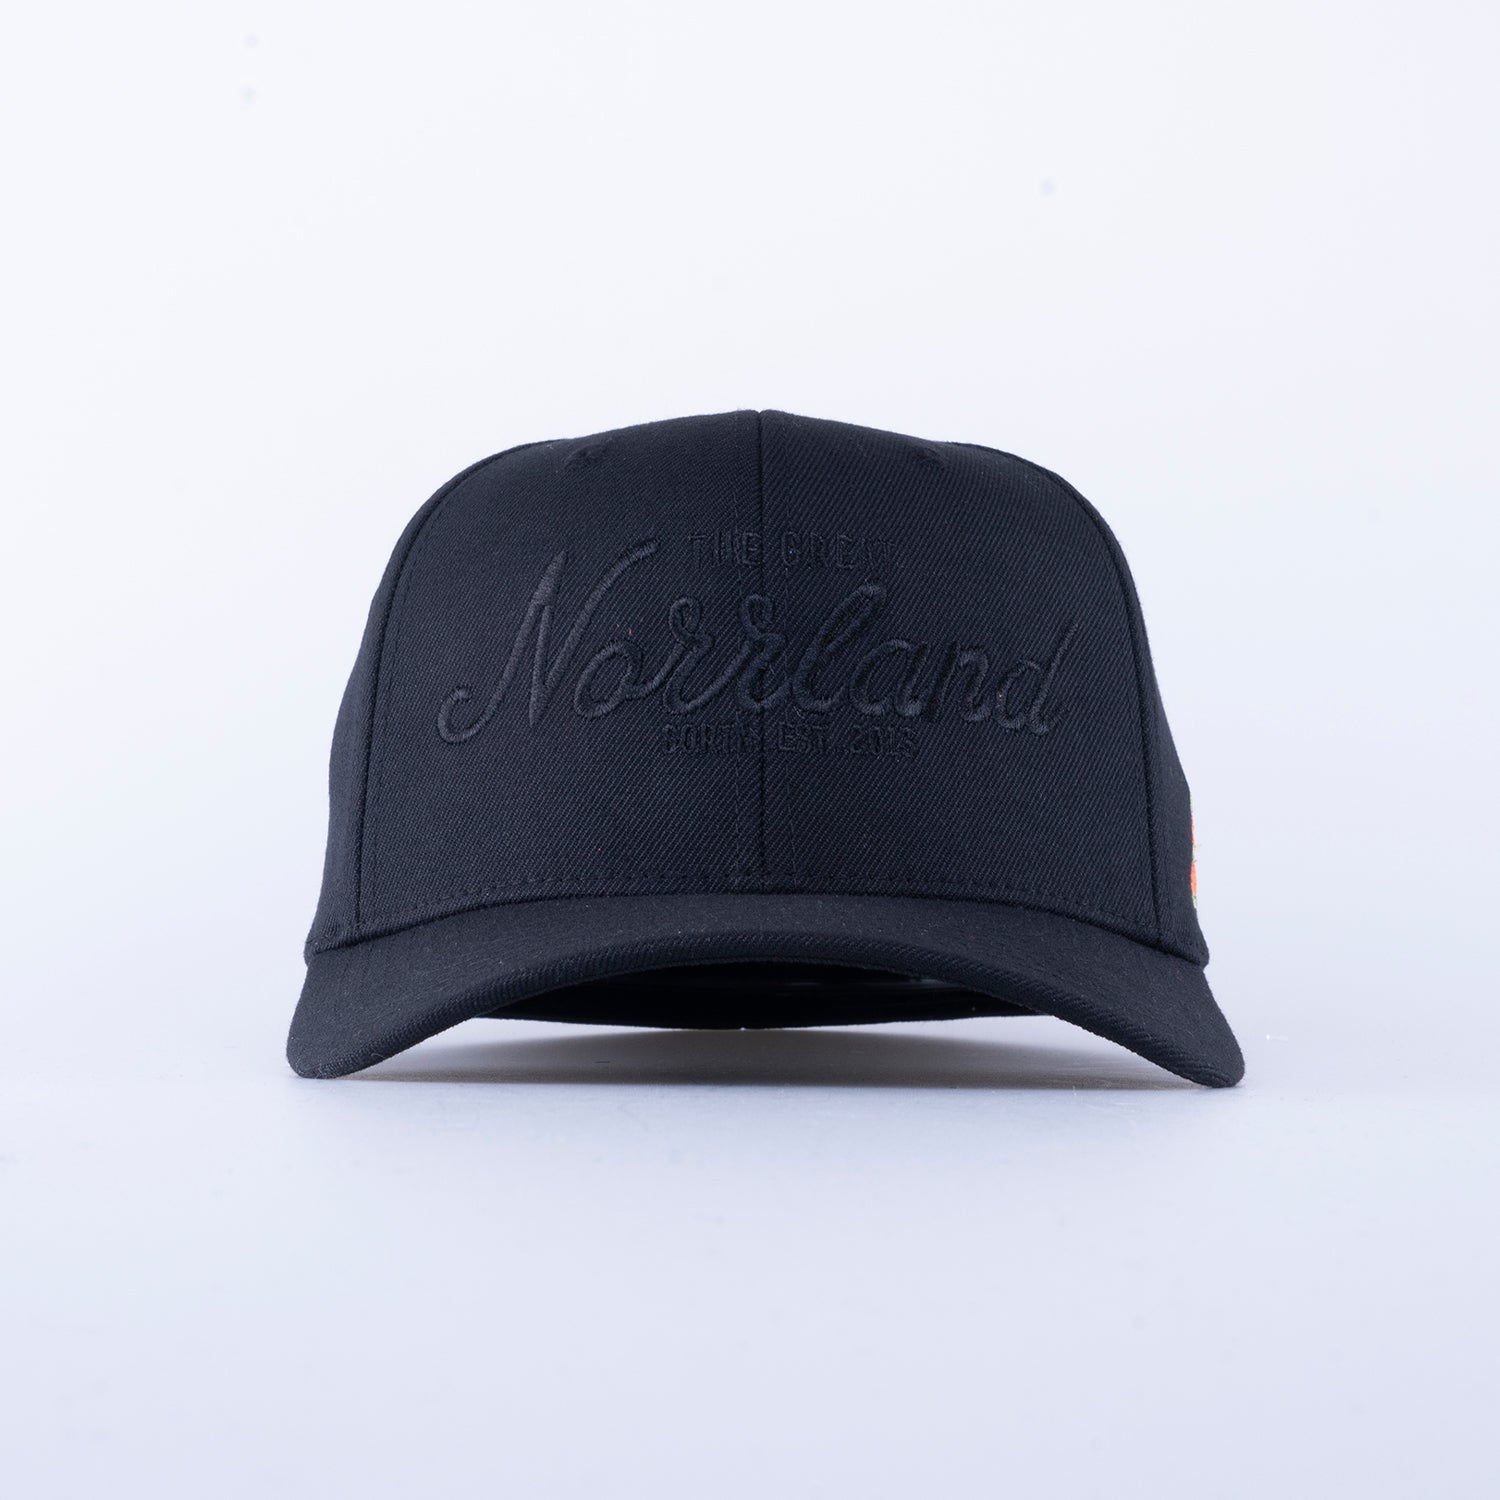 GREAT NORRLAND FLEX CAP - ALL BLACK